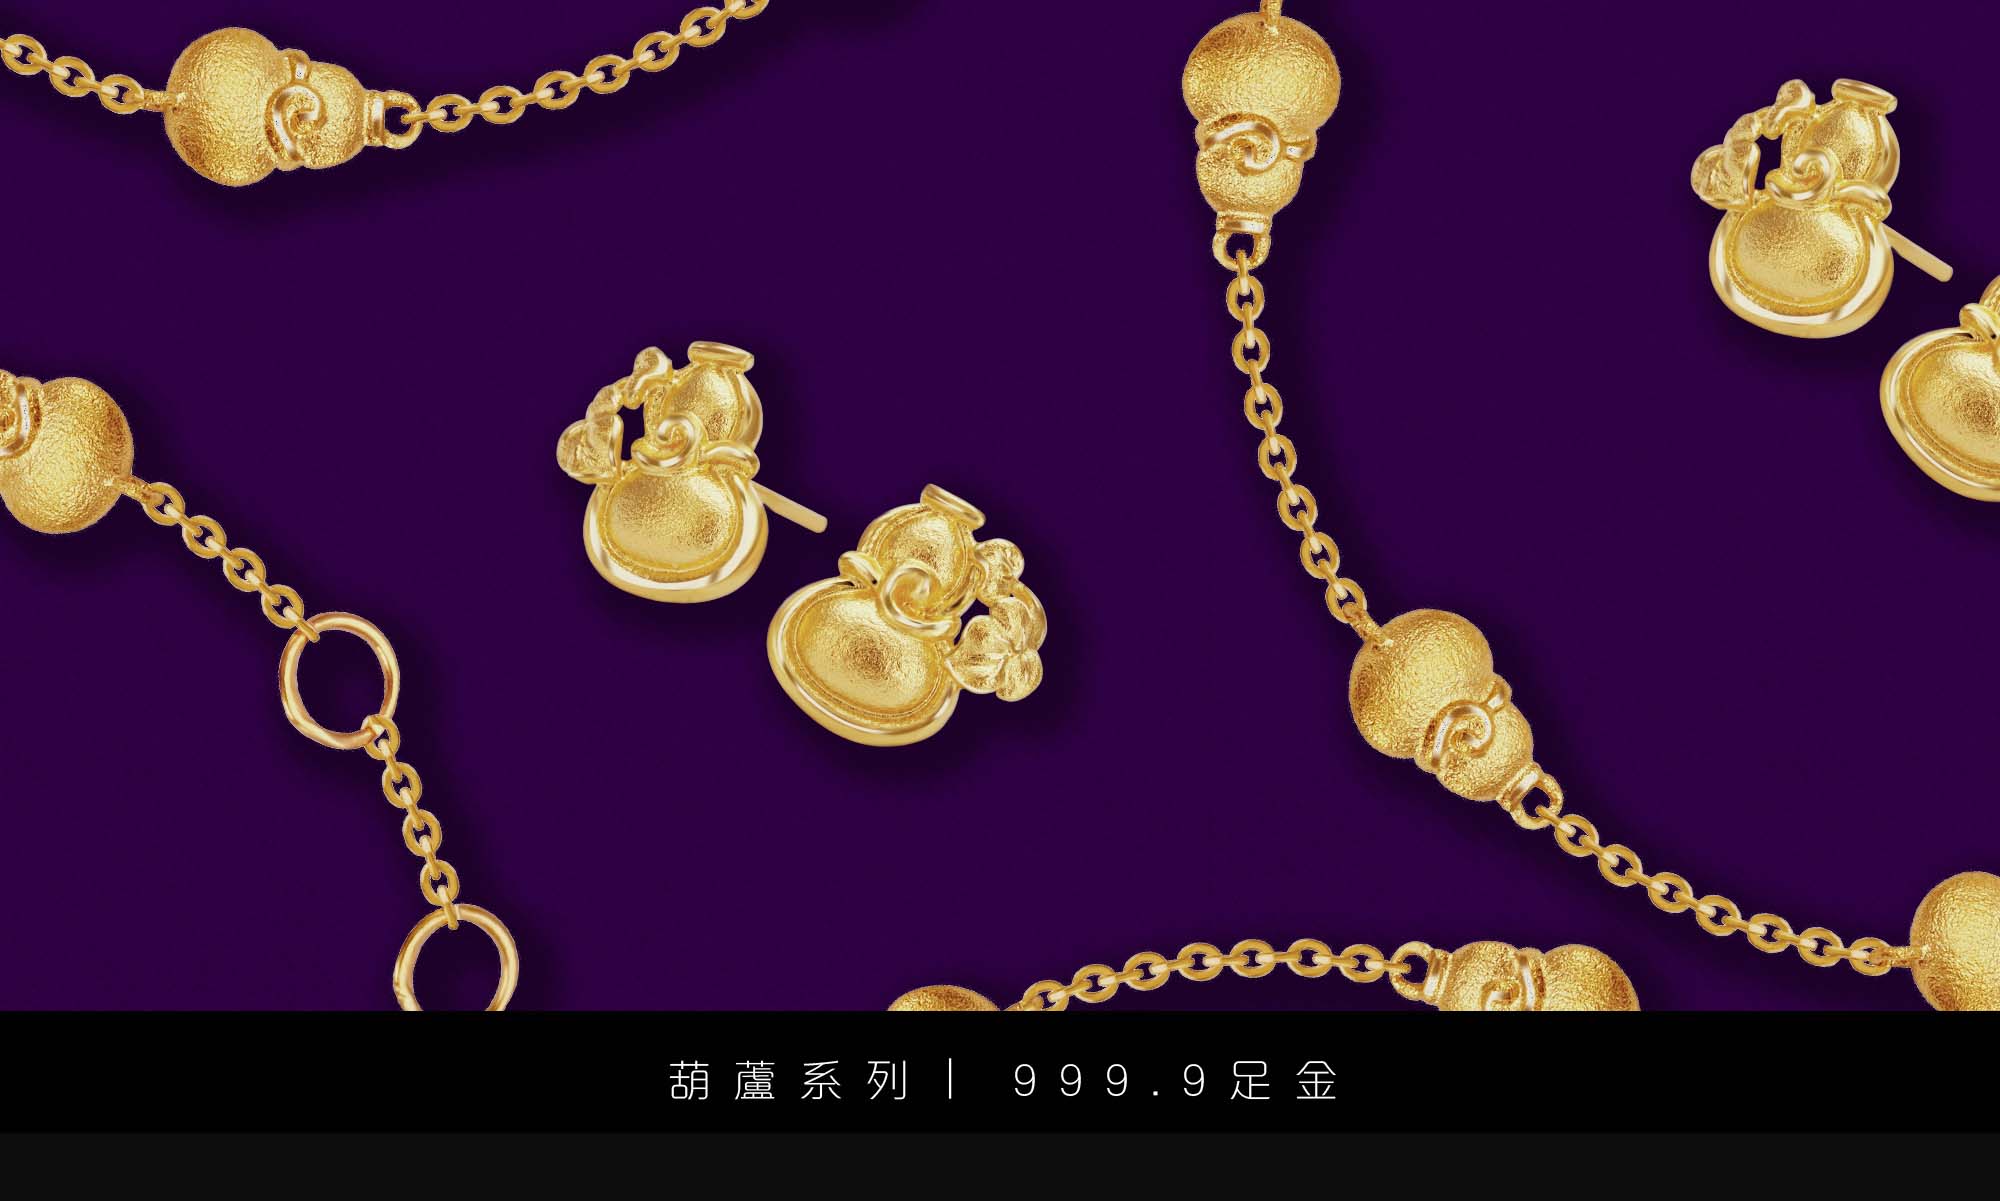 景福珠宝新一代999.9足金葫芦系列 满载温暖祝福的最佳礼物